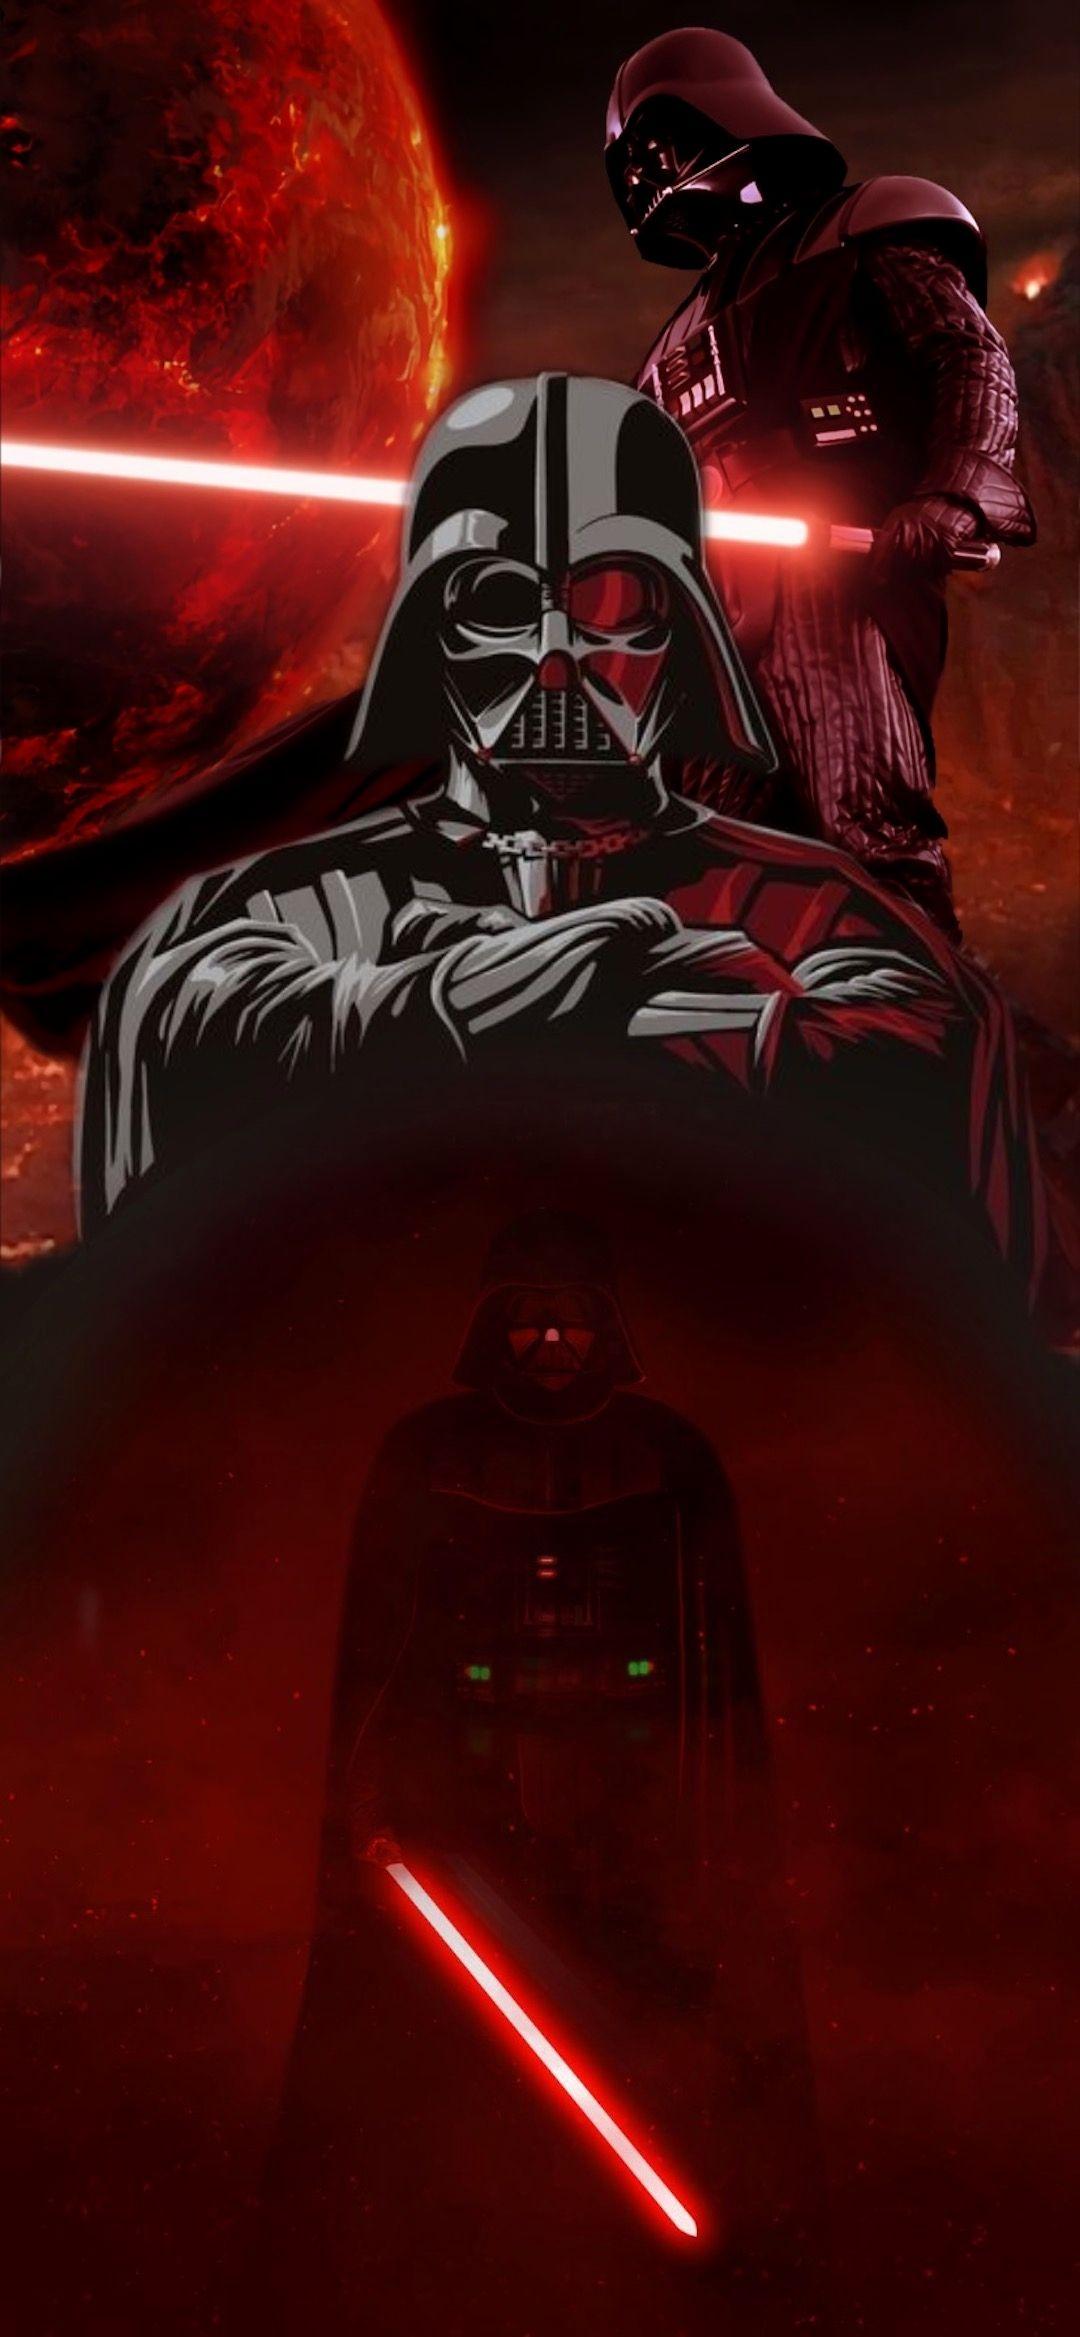 Darth Vader iPhone Wallpapers Top Free Darth Vader